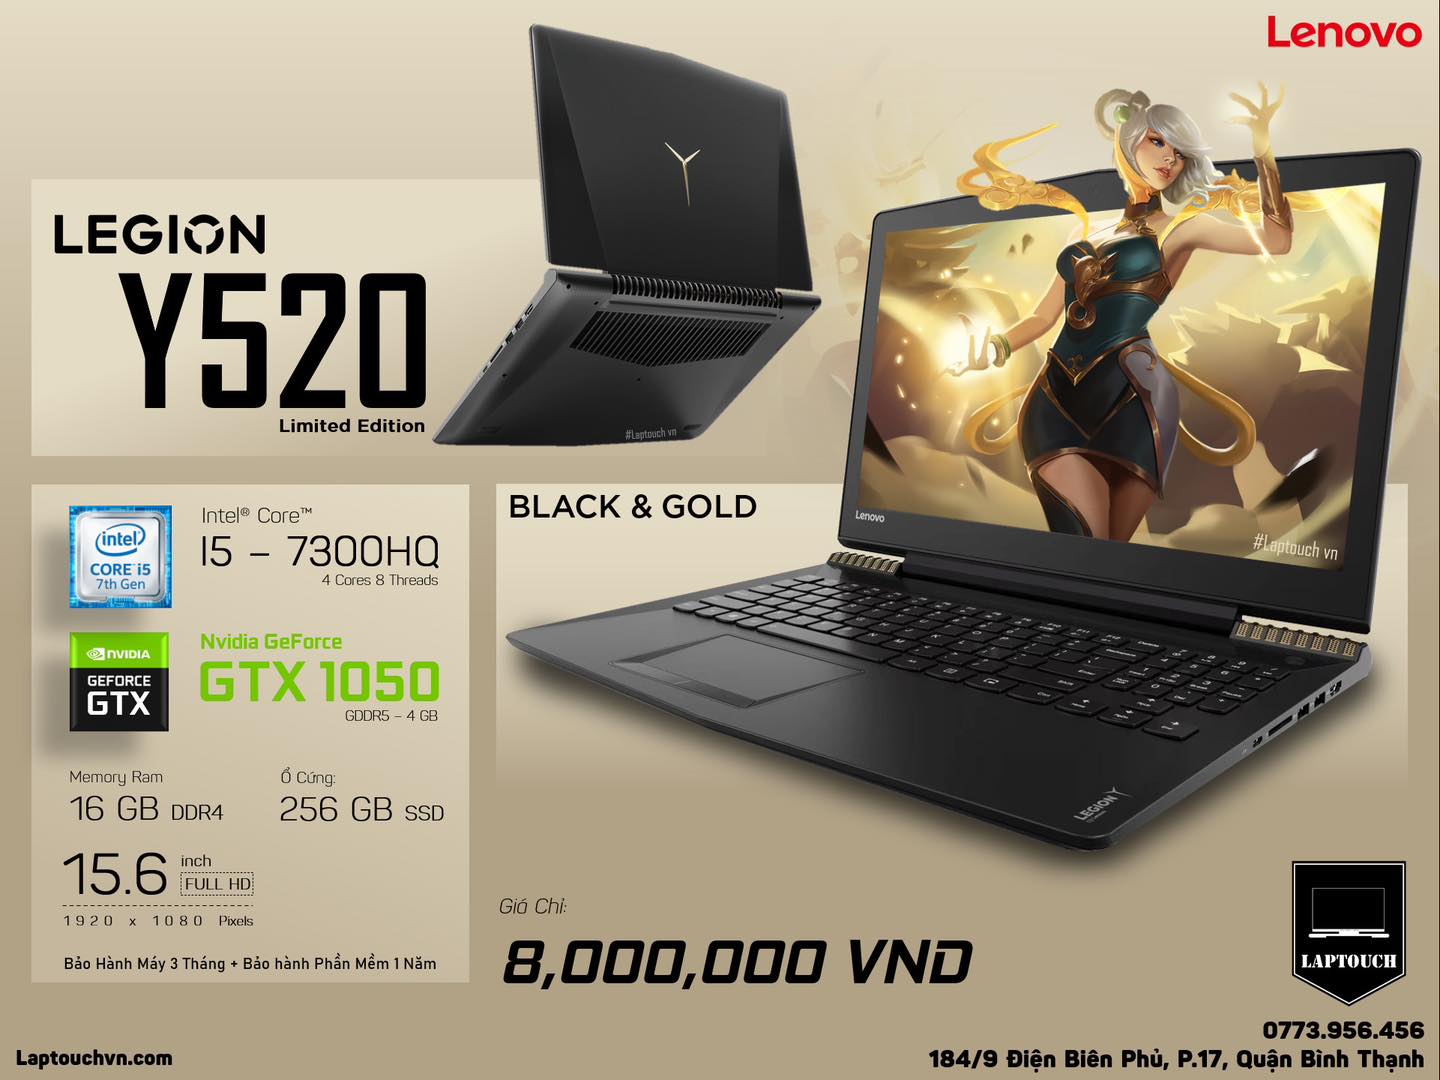 Lenovo Legion Y520 [ Limited Edition - Black & Gold ]